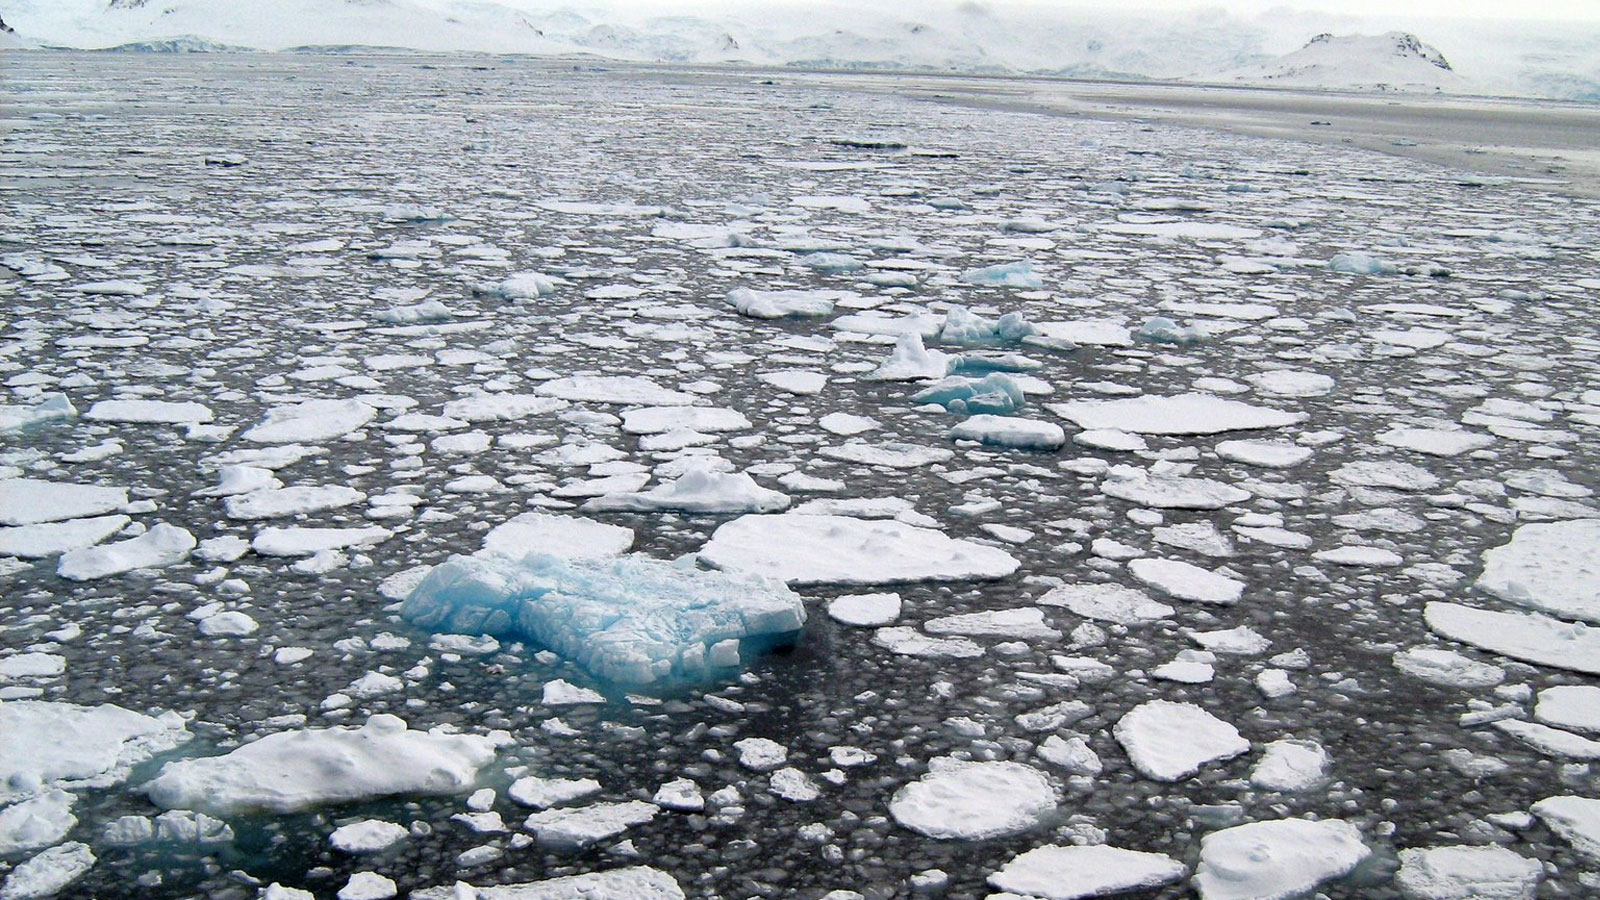 Crisi climatica e il problema dell’amplificazione artica, ossia il riscaldamento del Polo